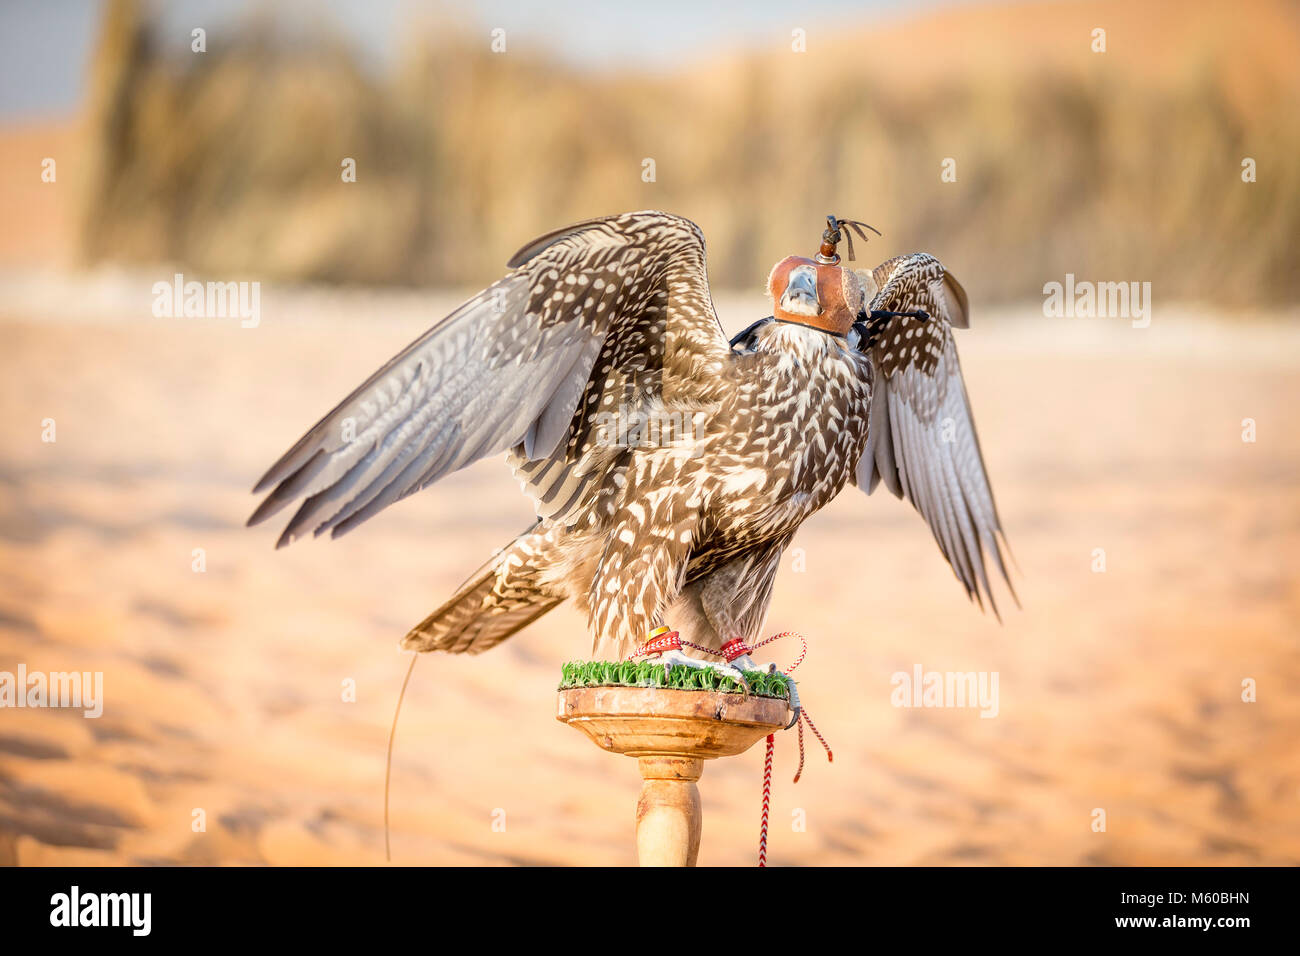 El halcón sacre (Falco cherrug). Pájaros entrenados con capucha en bloque. Abu Dhabi Foto de stock